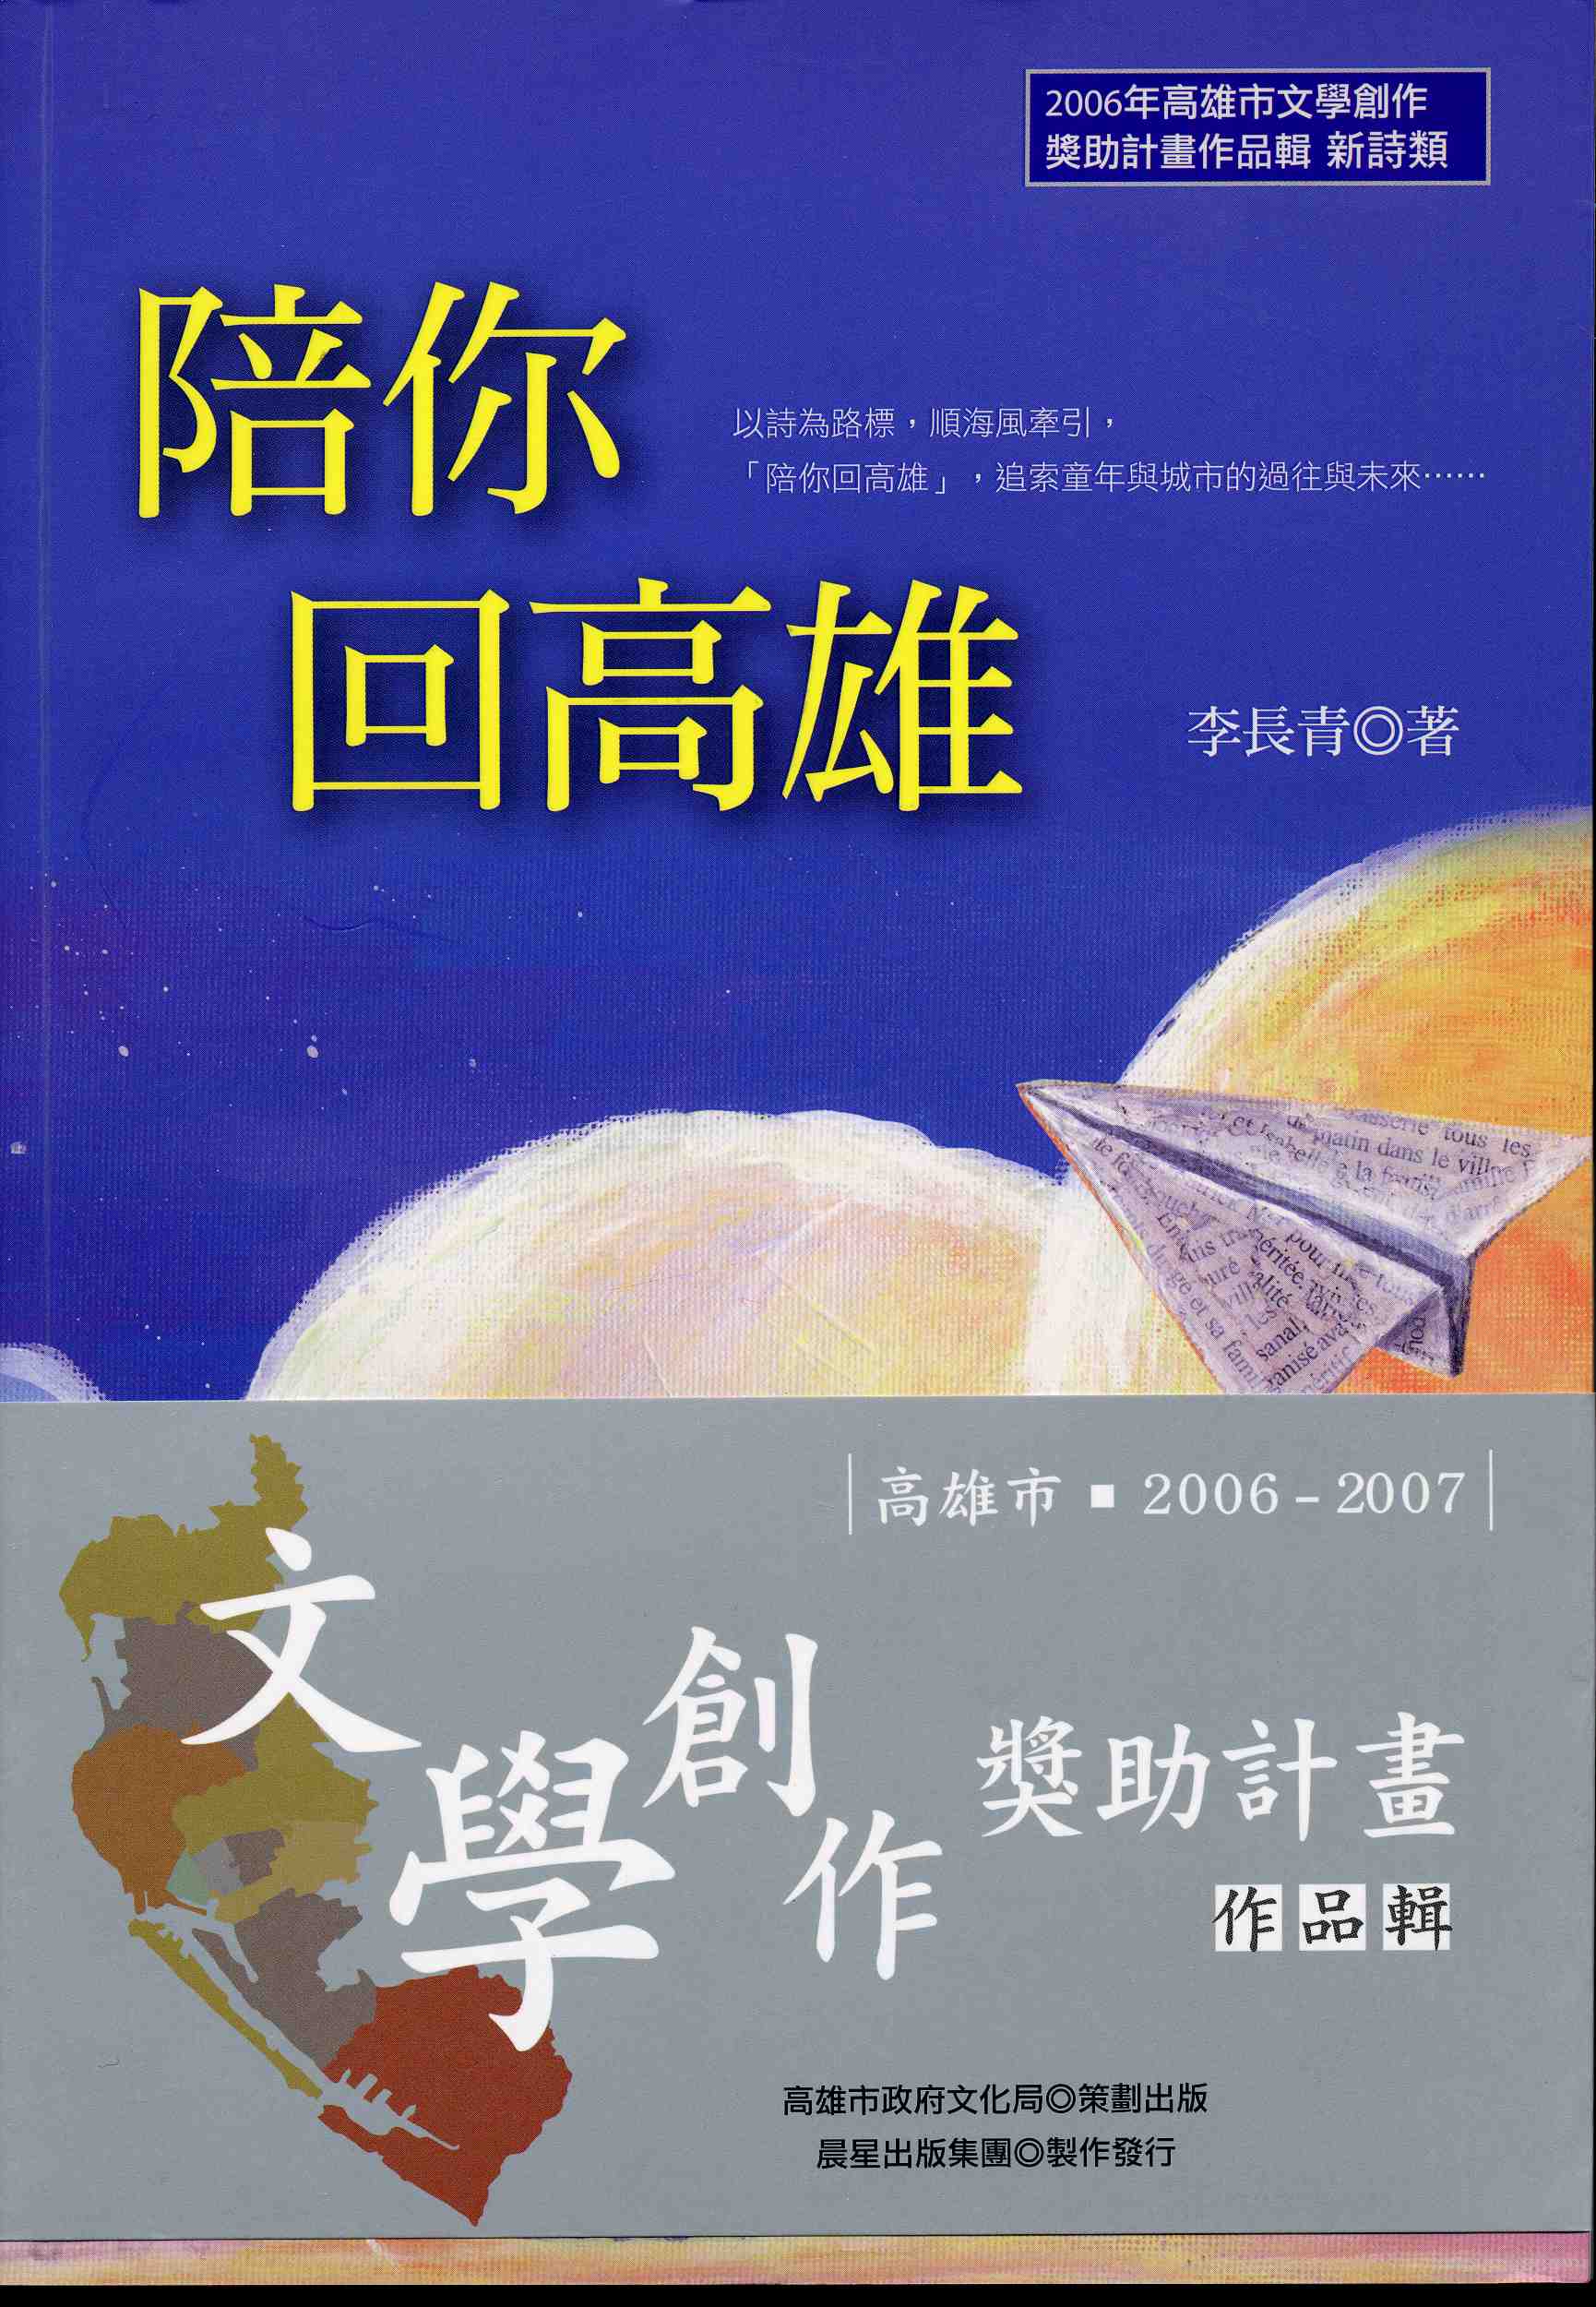 2006-7高雄文學創作獎助作品1-6(2)<陪你回高雄>李長青(2006)新詩類